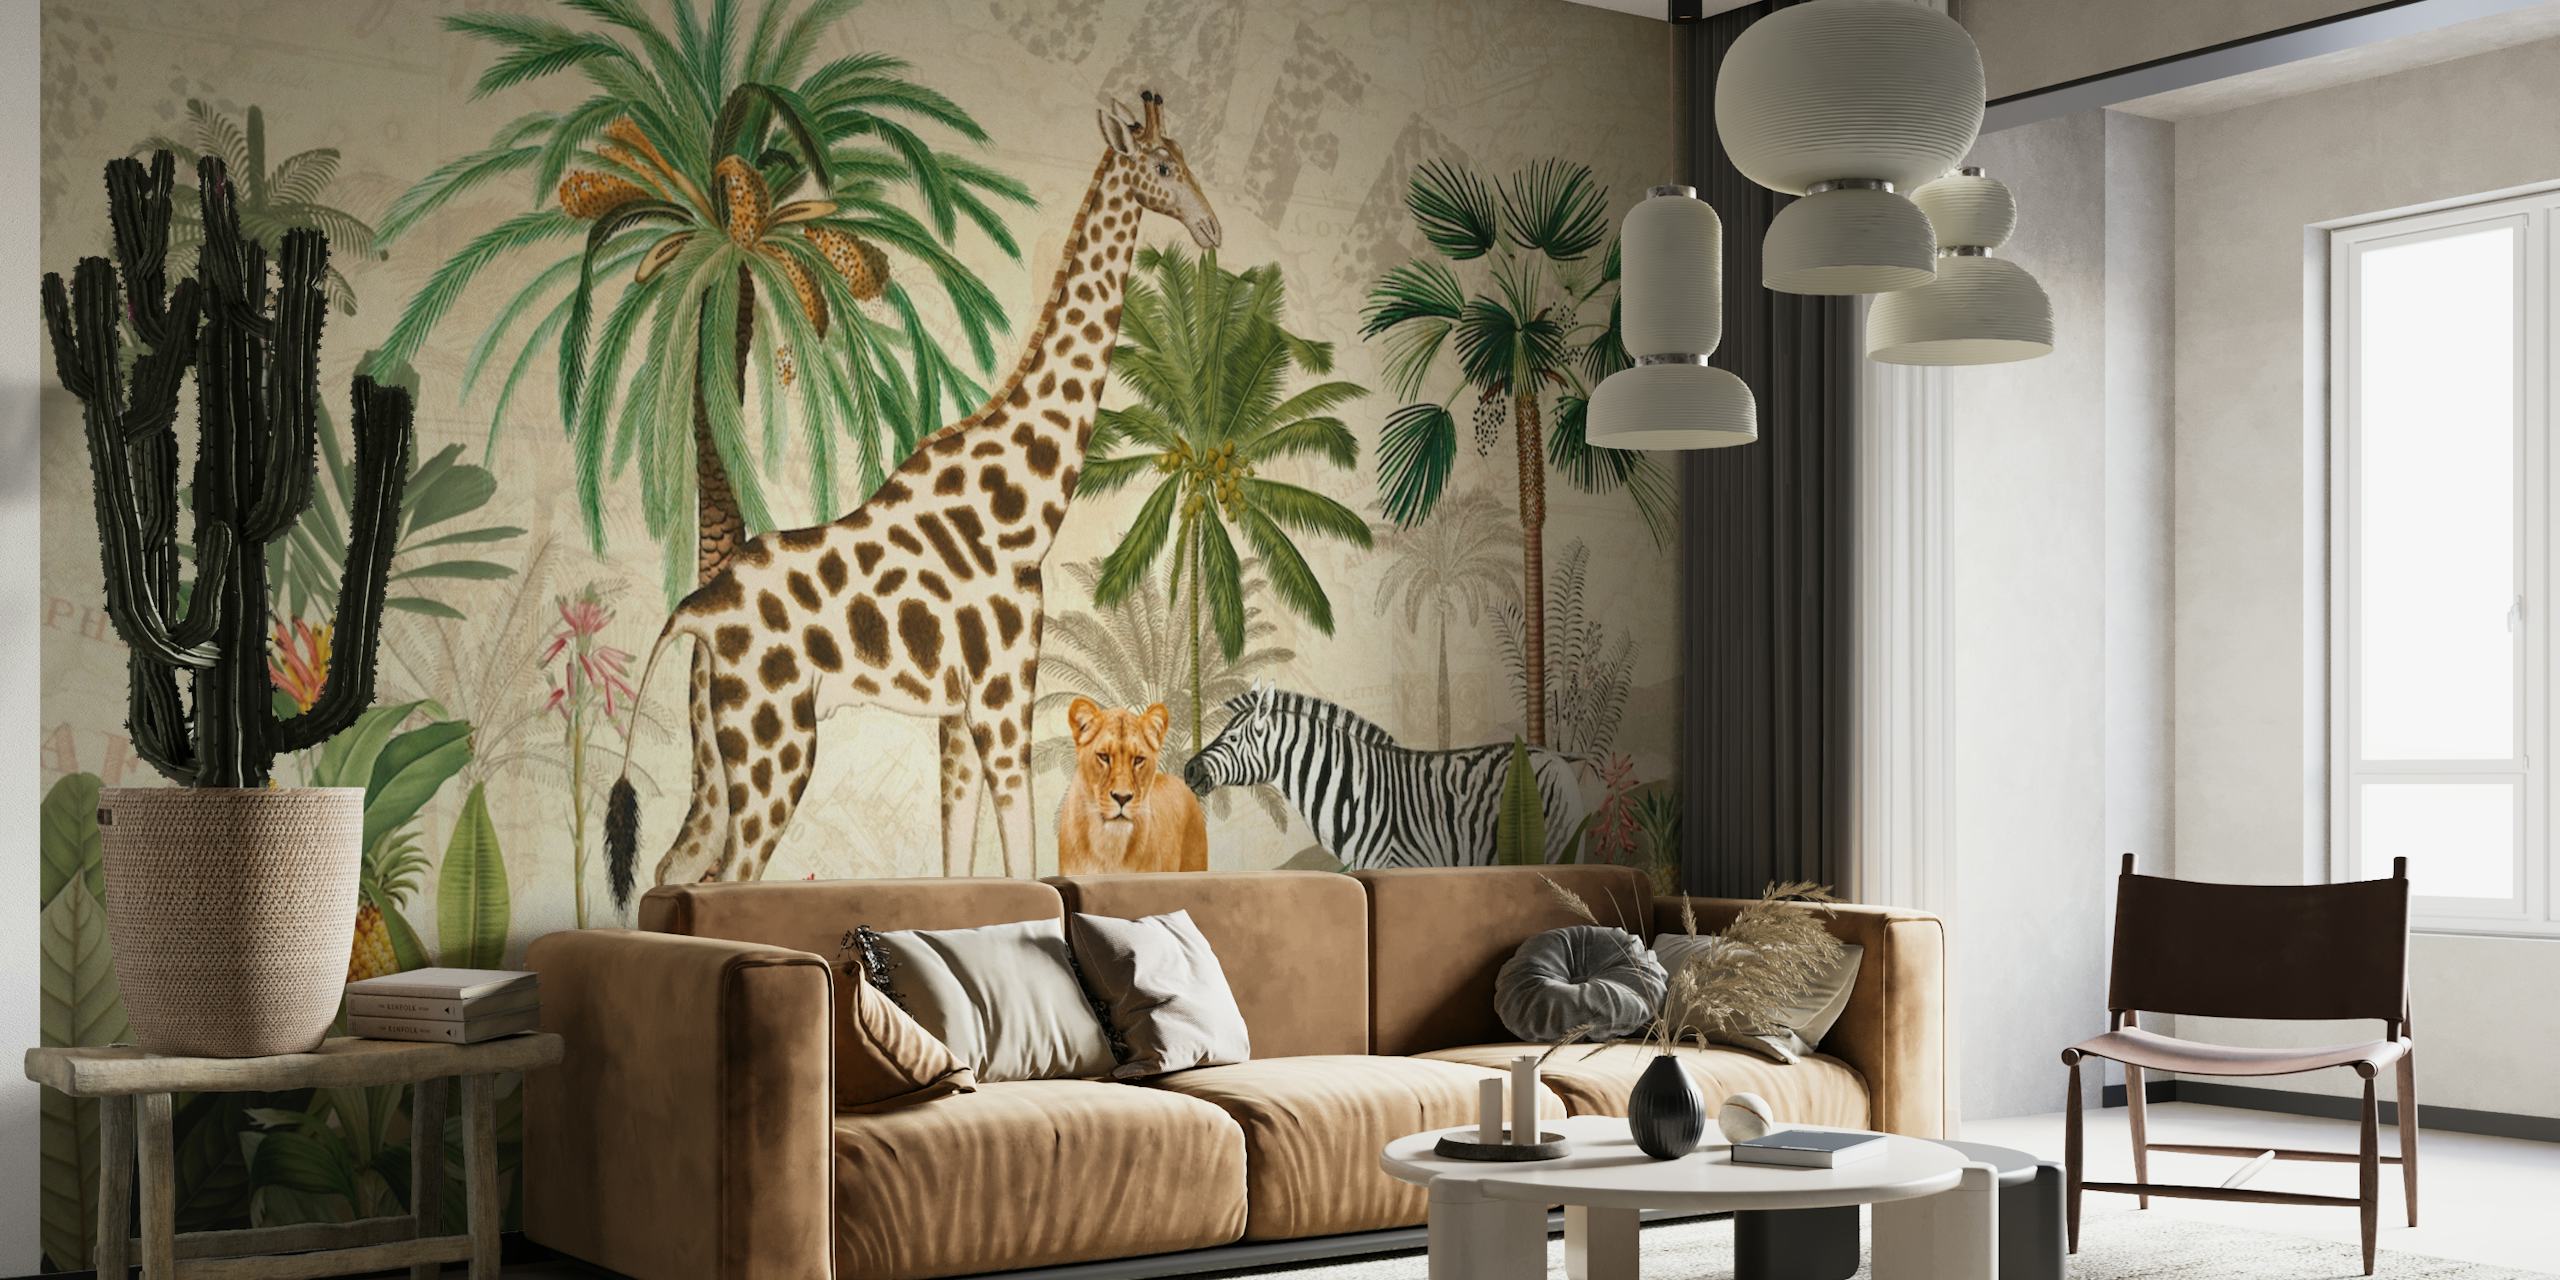 Vintage-tyylinen viidakkosafari-seinämaalaus, jossa on kirahveja, leopardeja ja seeproja vehreässä ympäristössä